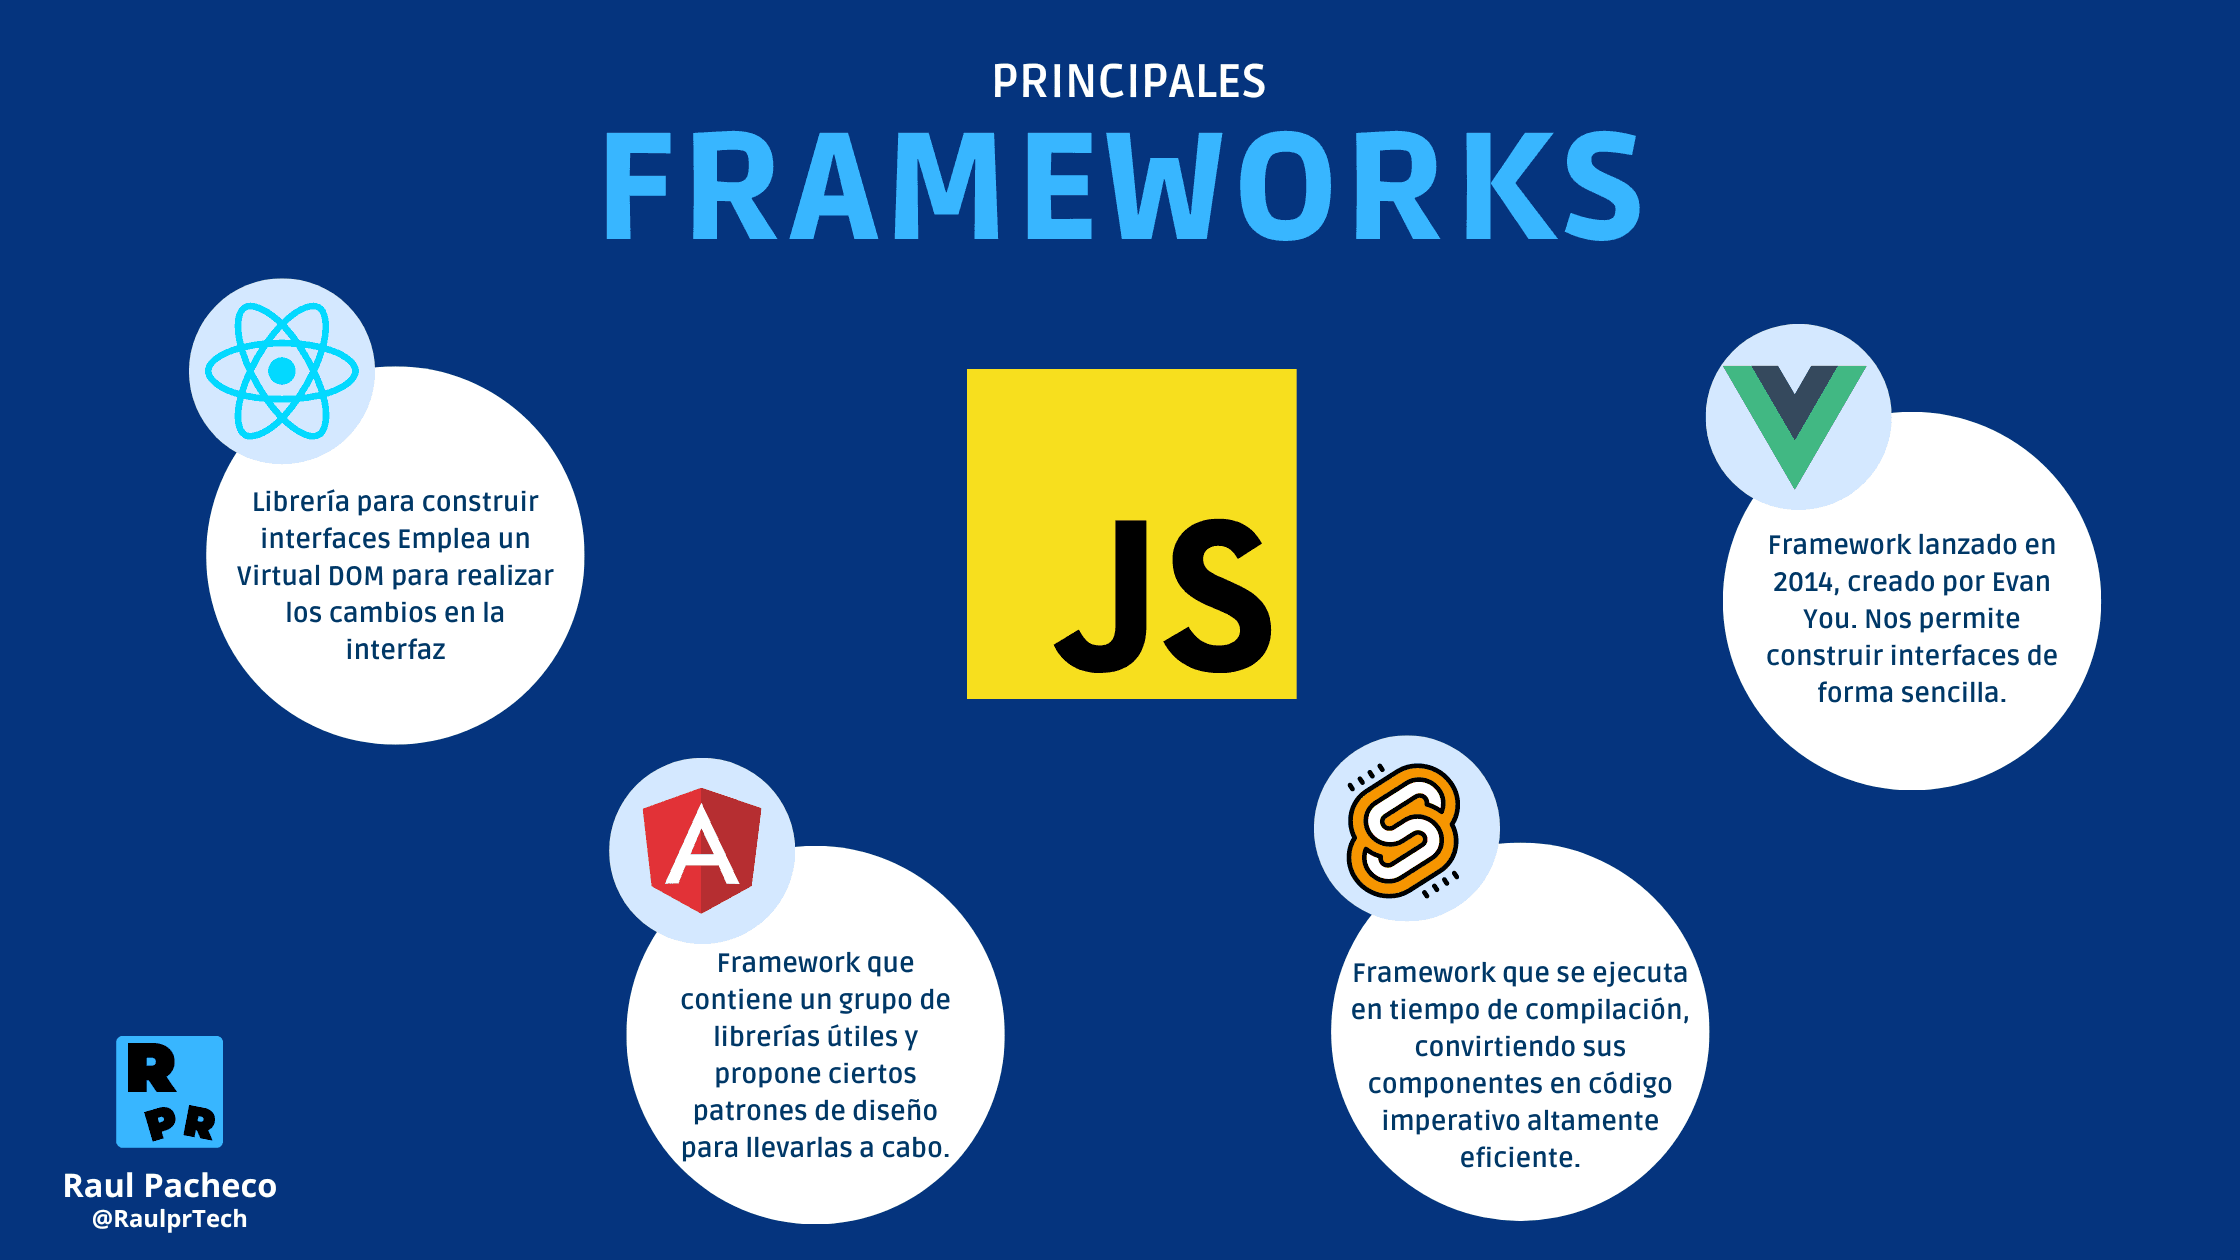 Frameworks de JavaScript - Logo de JavaScript en el centro y alrededor el logo de sus Frameworks mas populares, React, Angular, Vue y Svelte